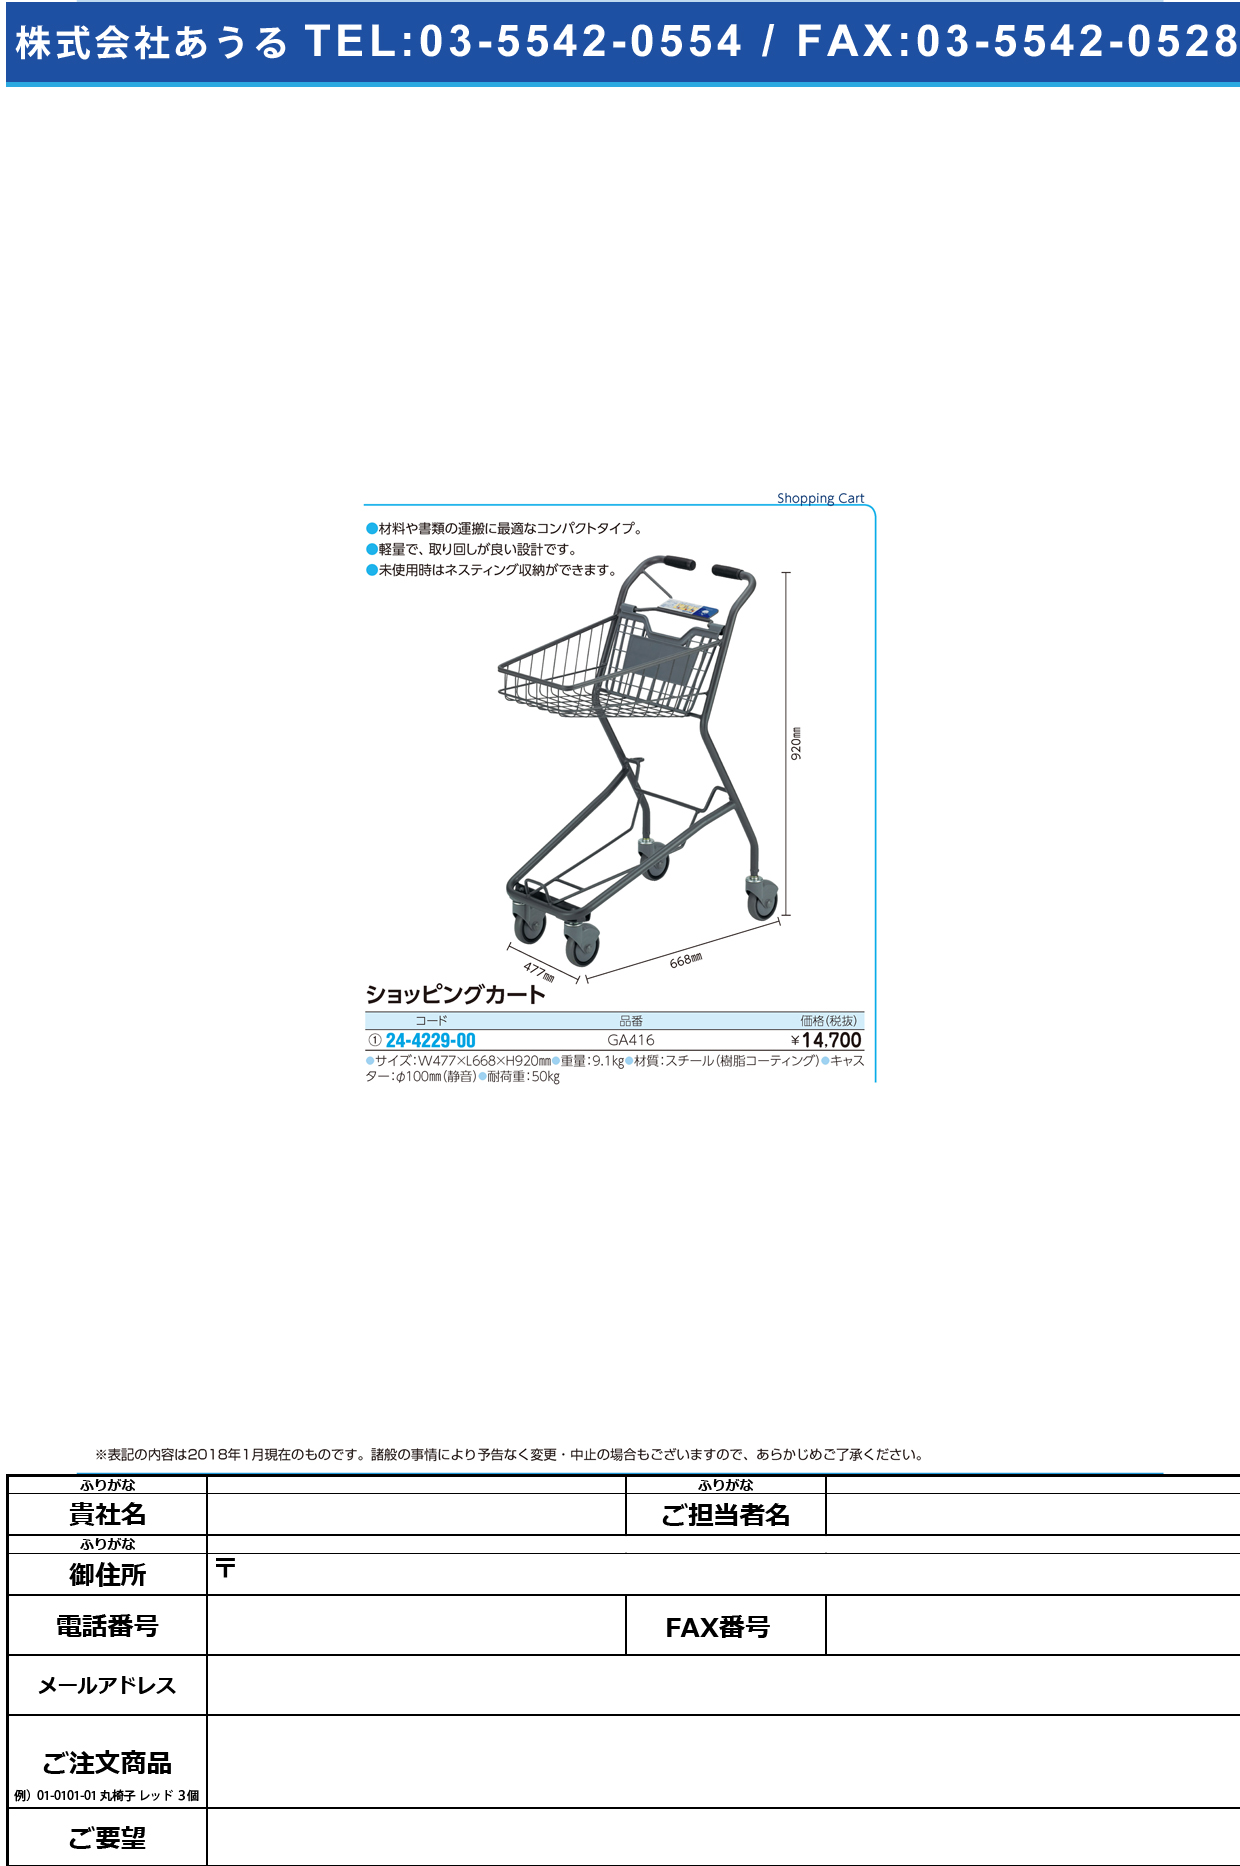 (24-4229-00)ショッピングカート（１９Ｂ） GA416 ｼｮｯﾋﾟﾝｸﾞｶｰﾄ19B(河淳)【1台単位】【2018年カタログ商品】